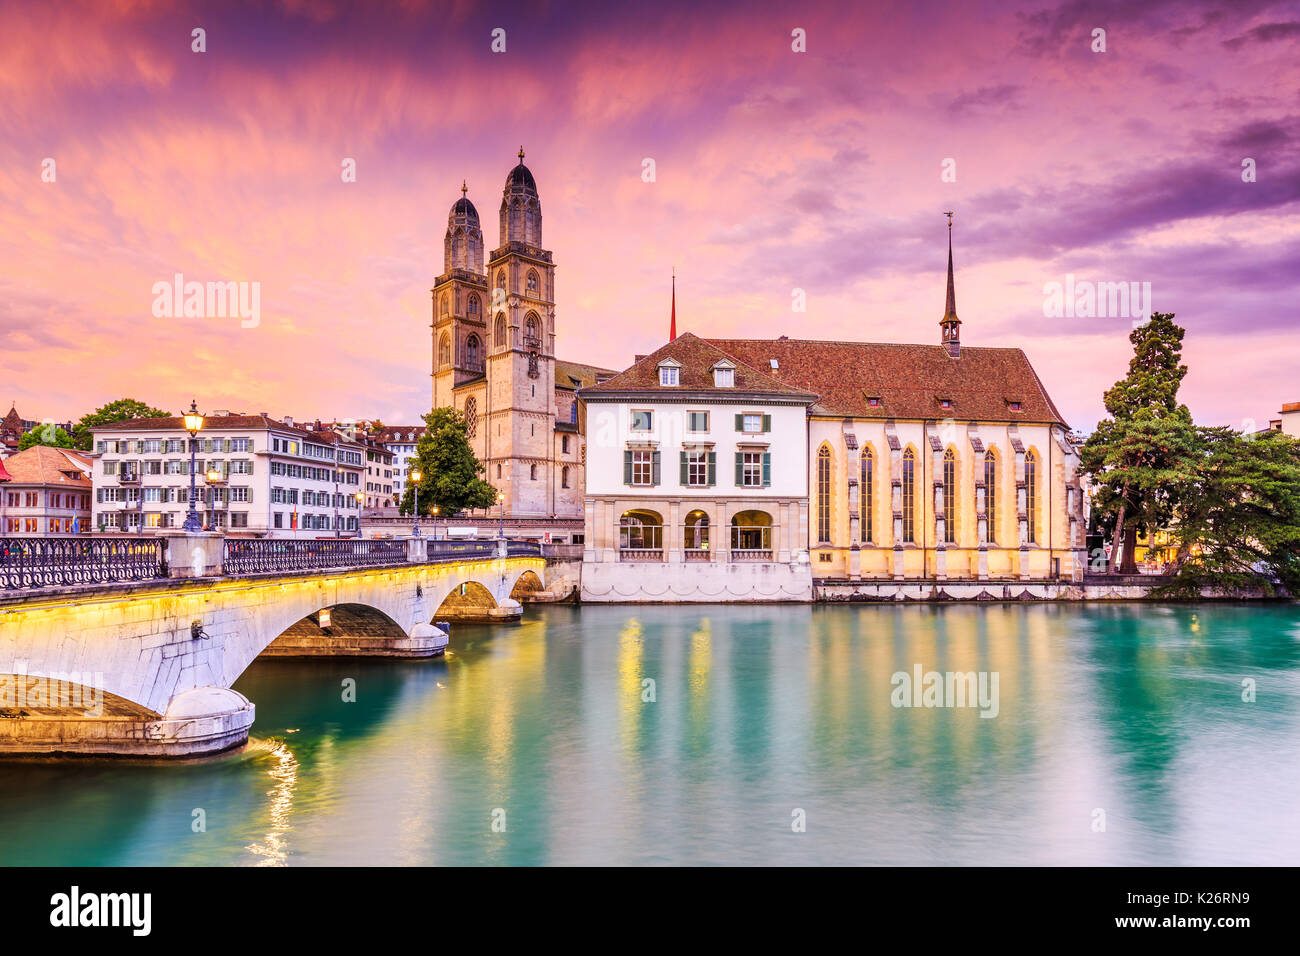 Zürich, Schweiz. Blick auf die historische Innenstadt mit dem berühmten Grossmünster Kirche, an der Limmat. Stockfoto